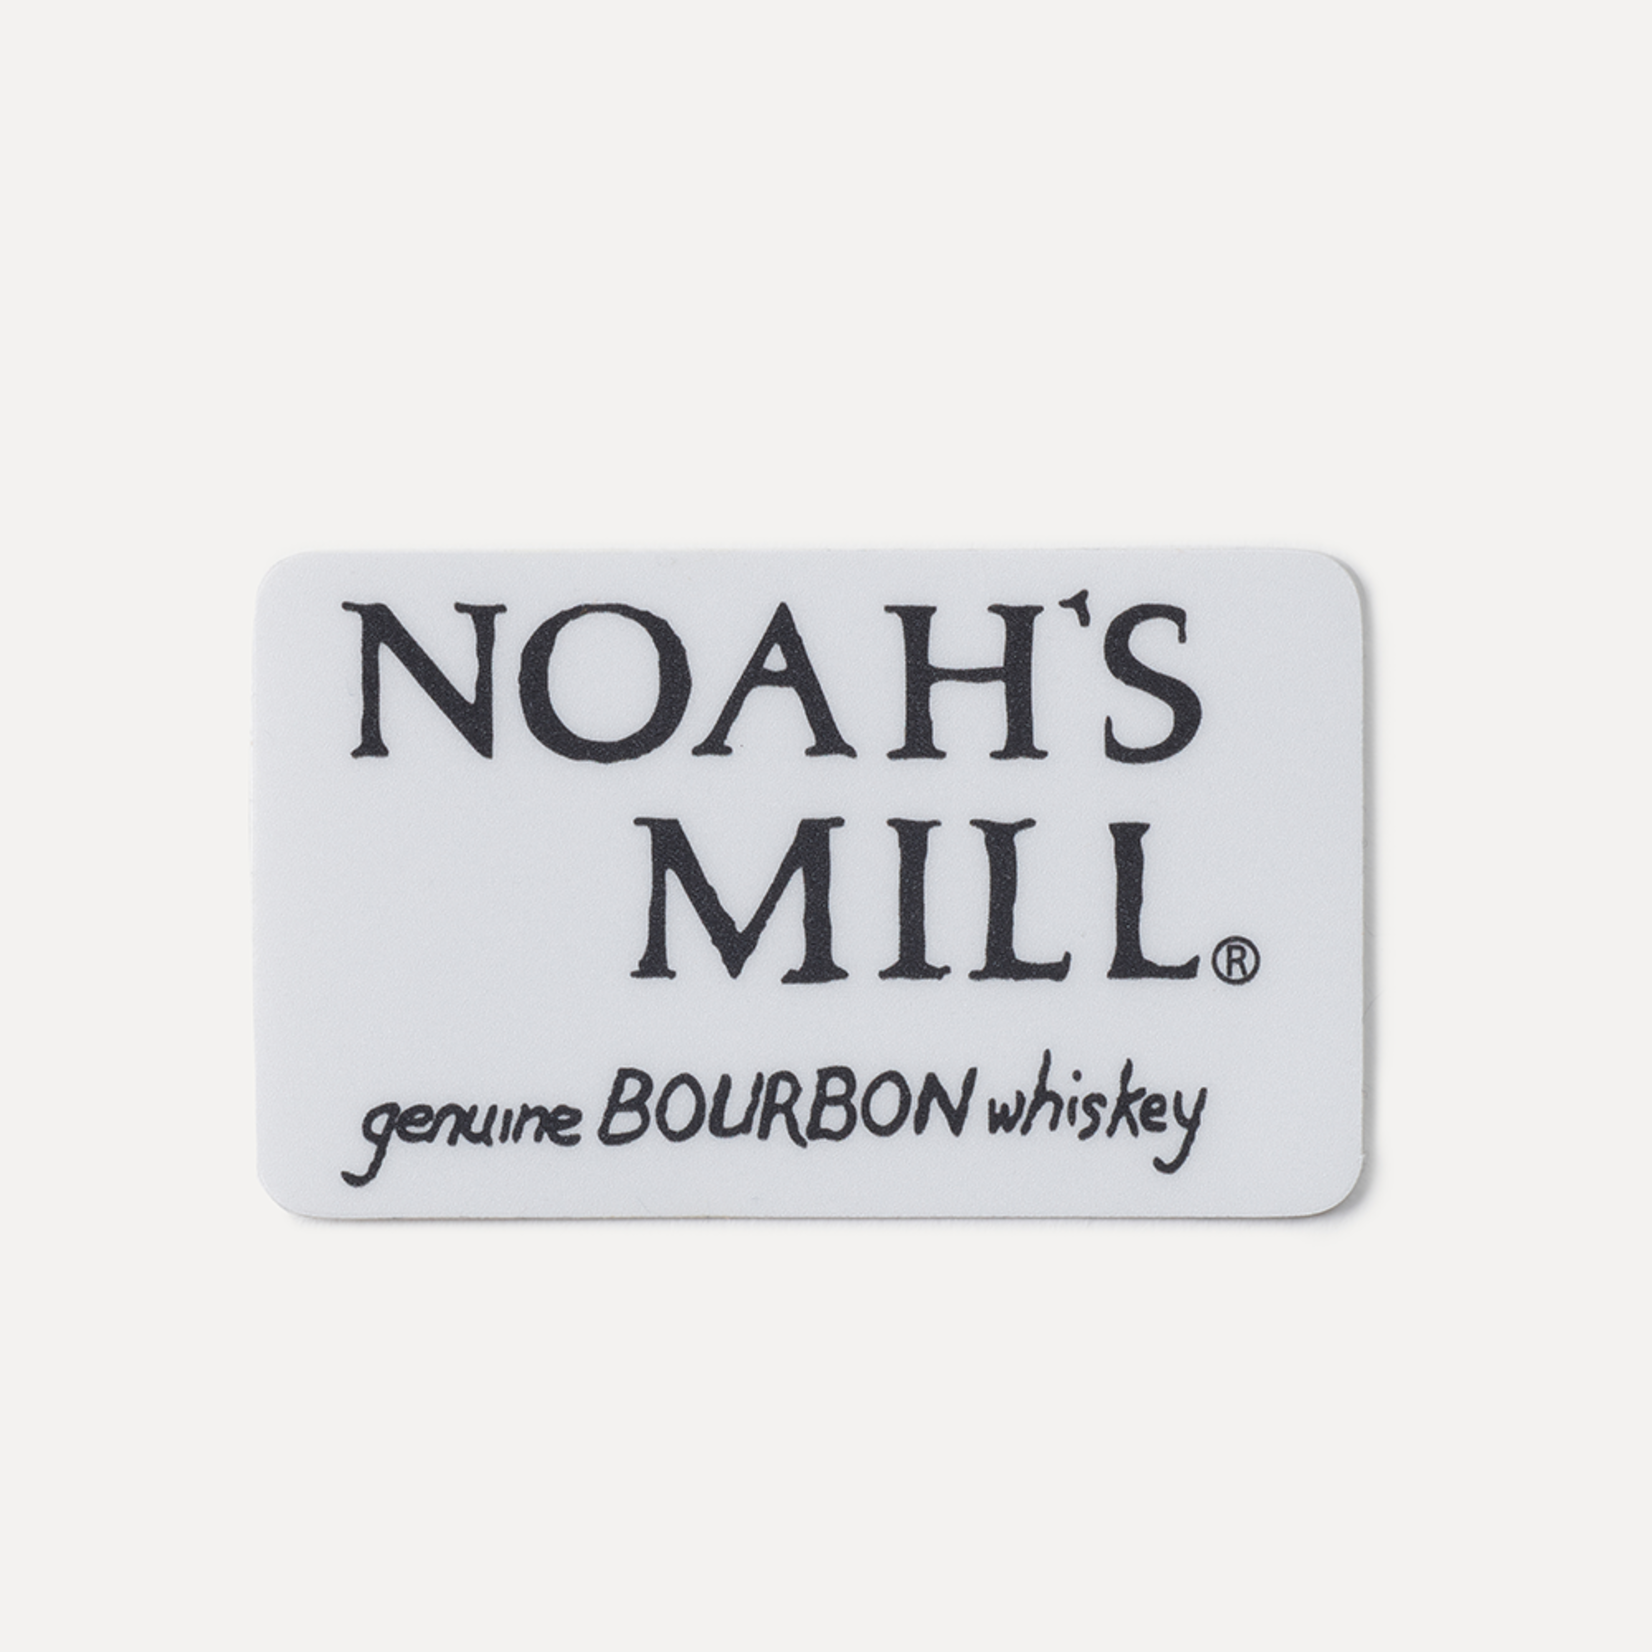 STICKER - Noah's Mill